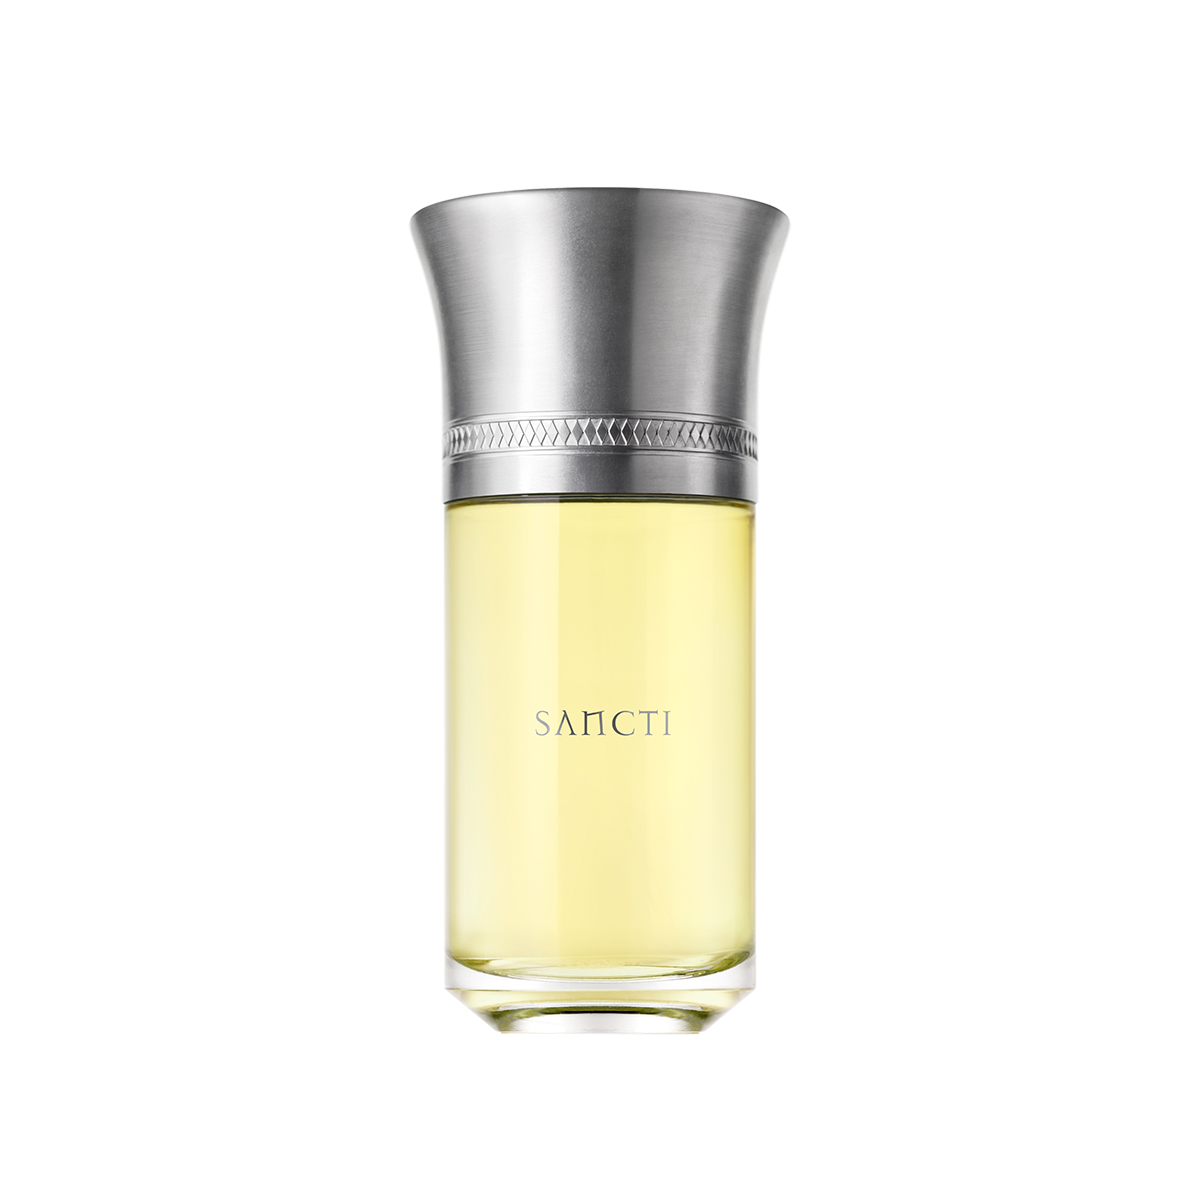 Sancti <br> Eau de Parfum 50ml / 100ml